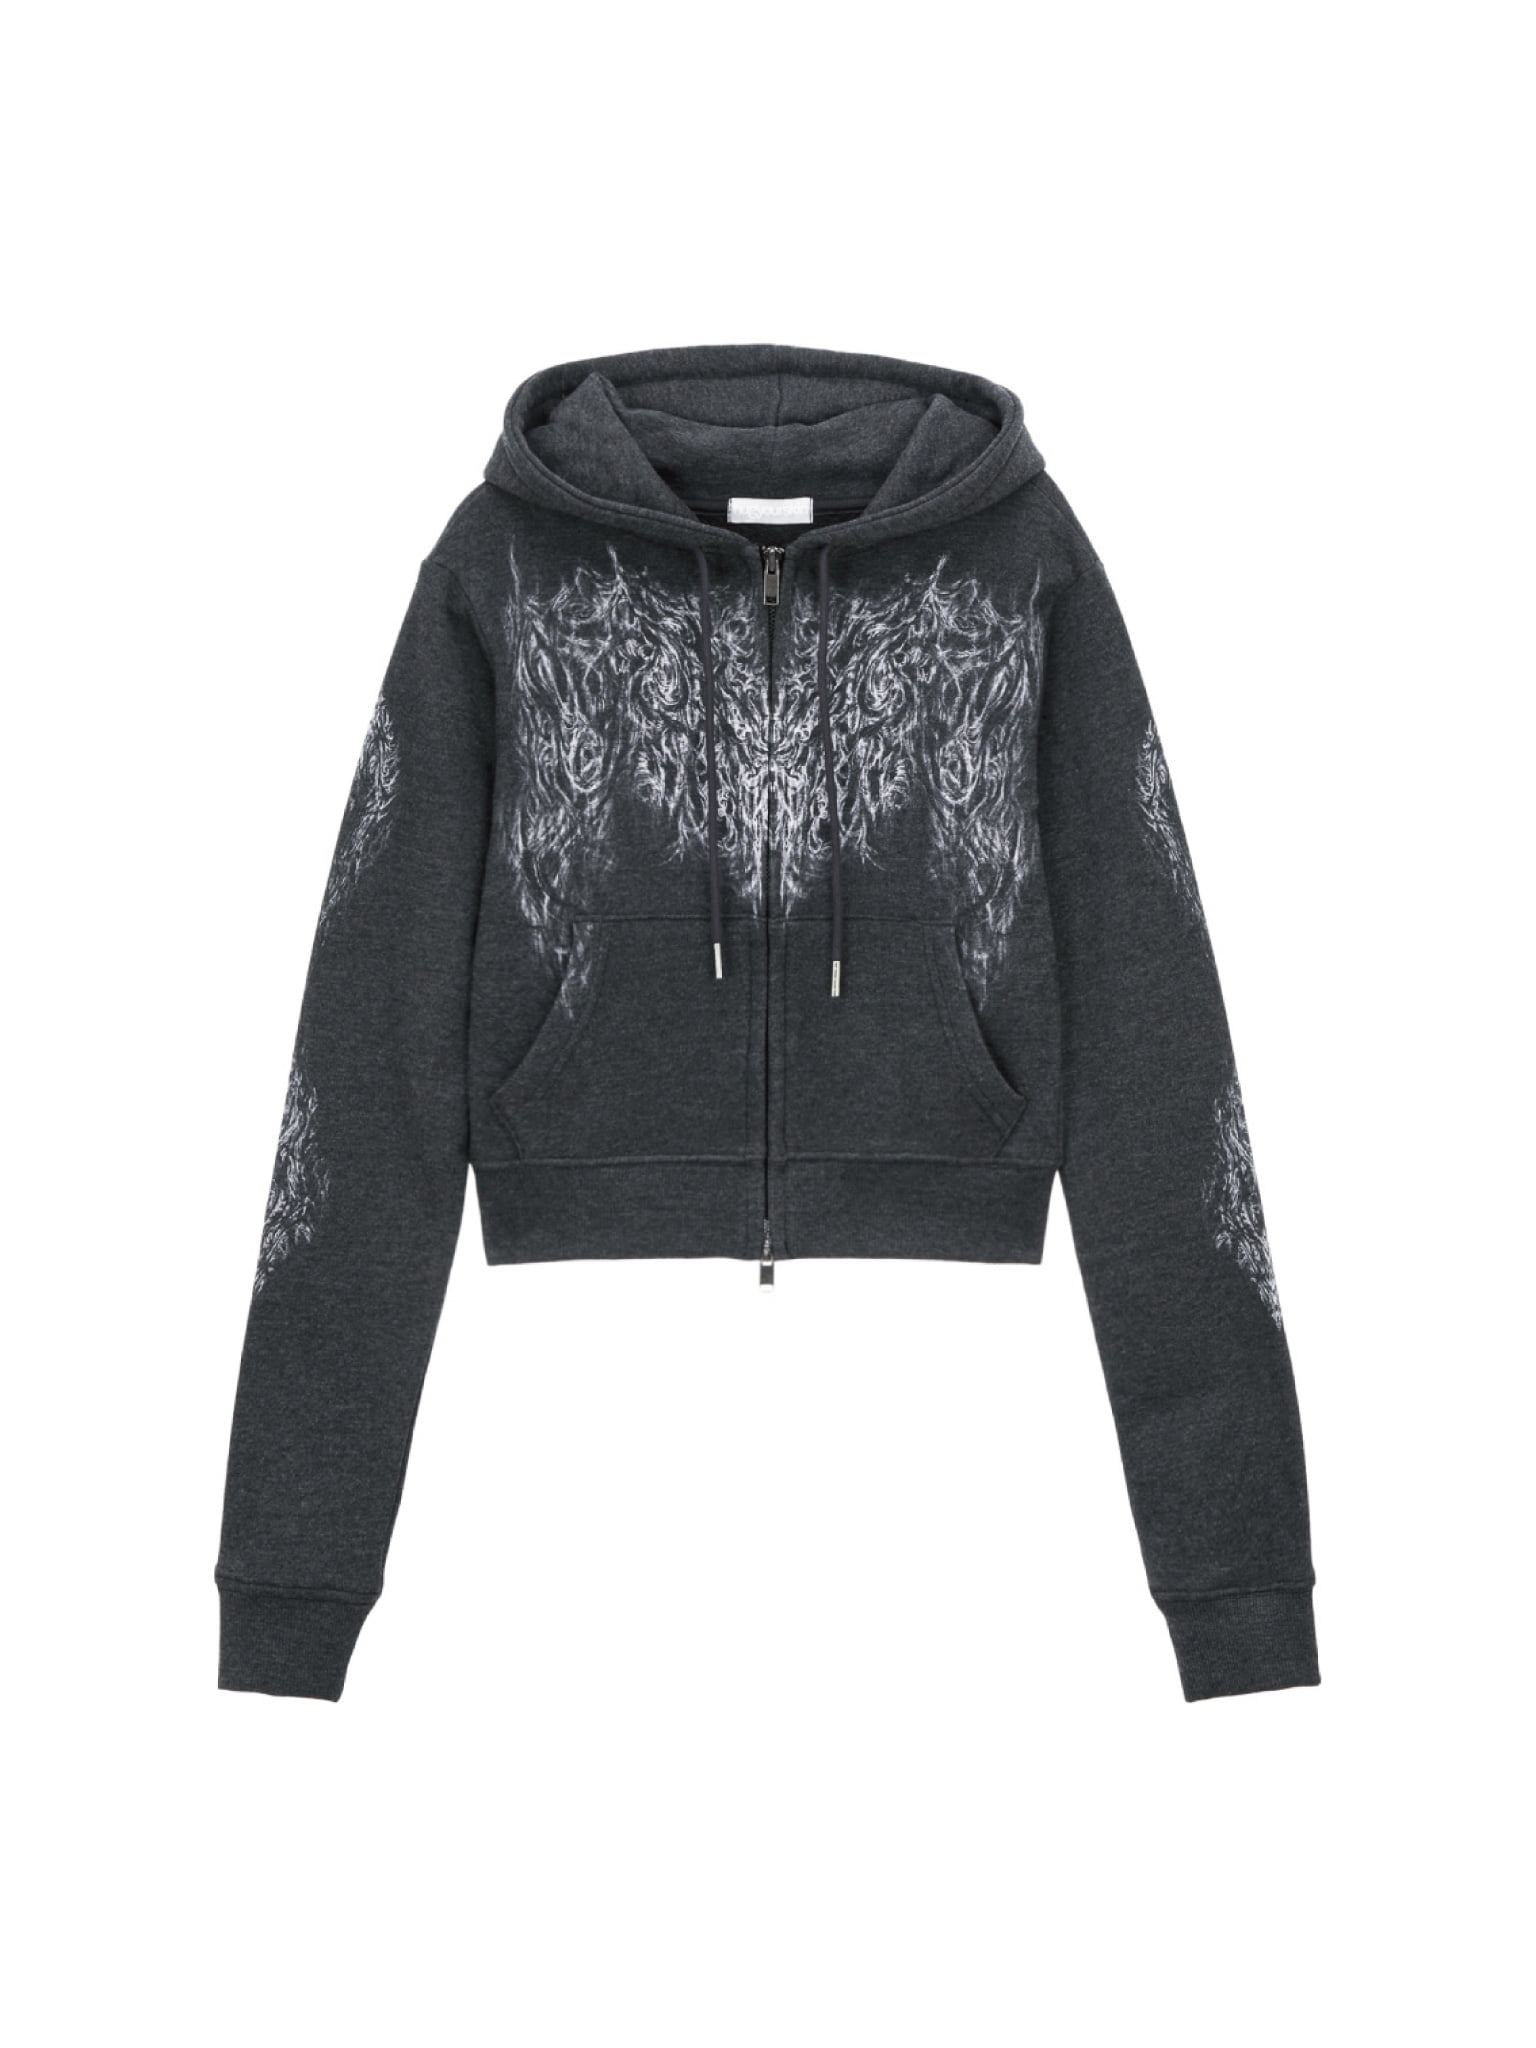 Skully cropped hoodie zip-up (Melange black)